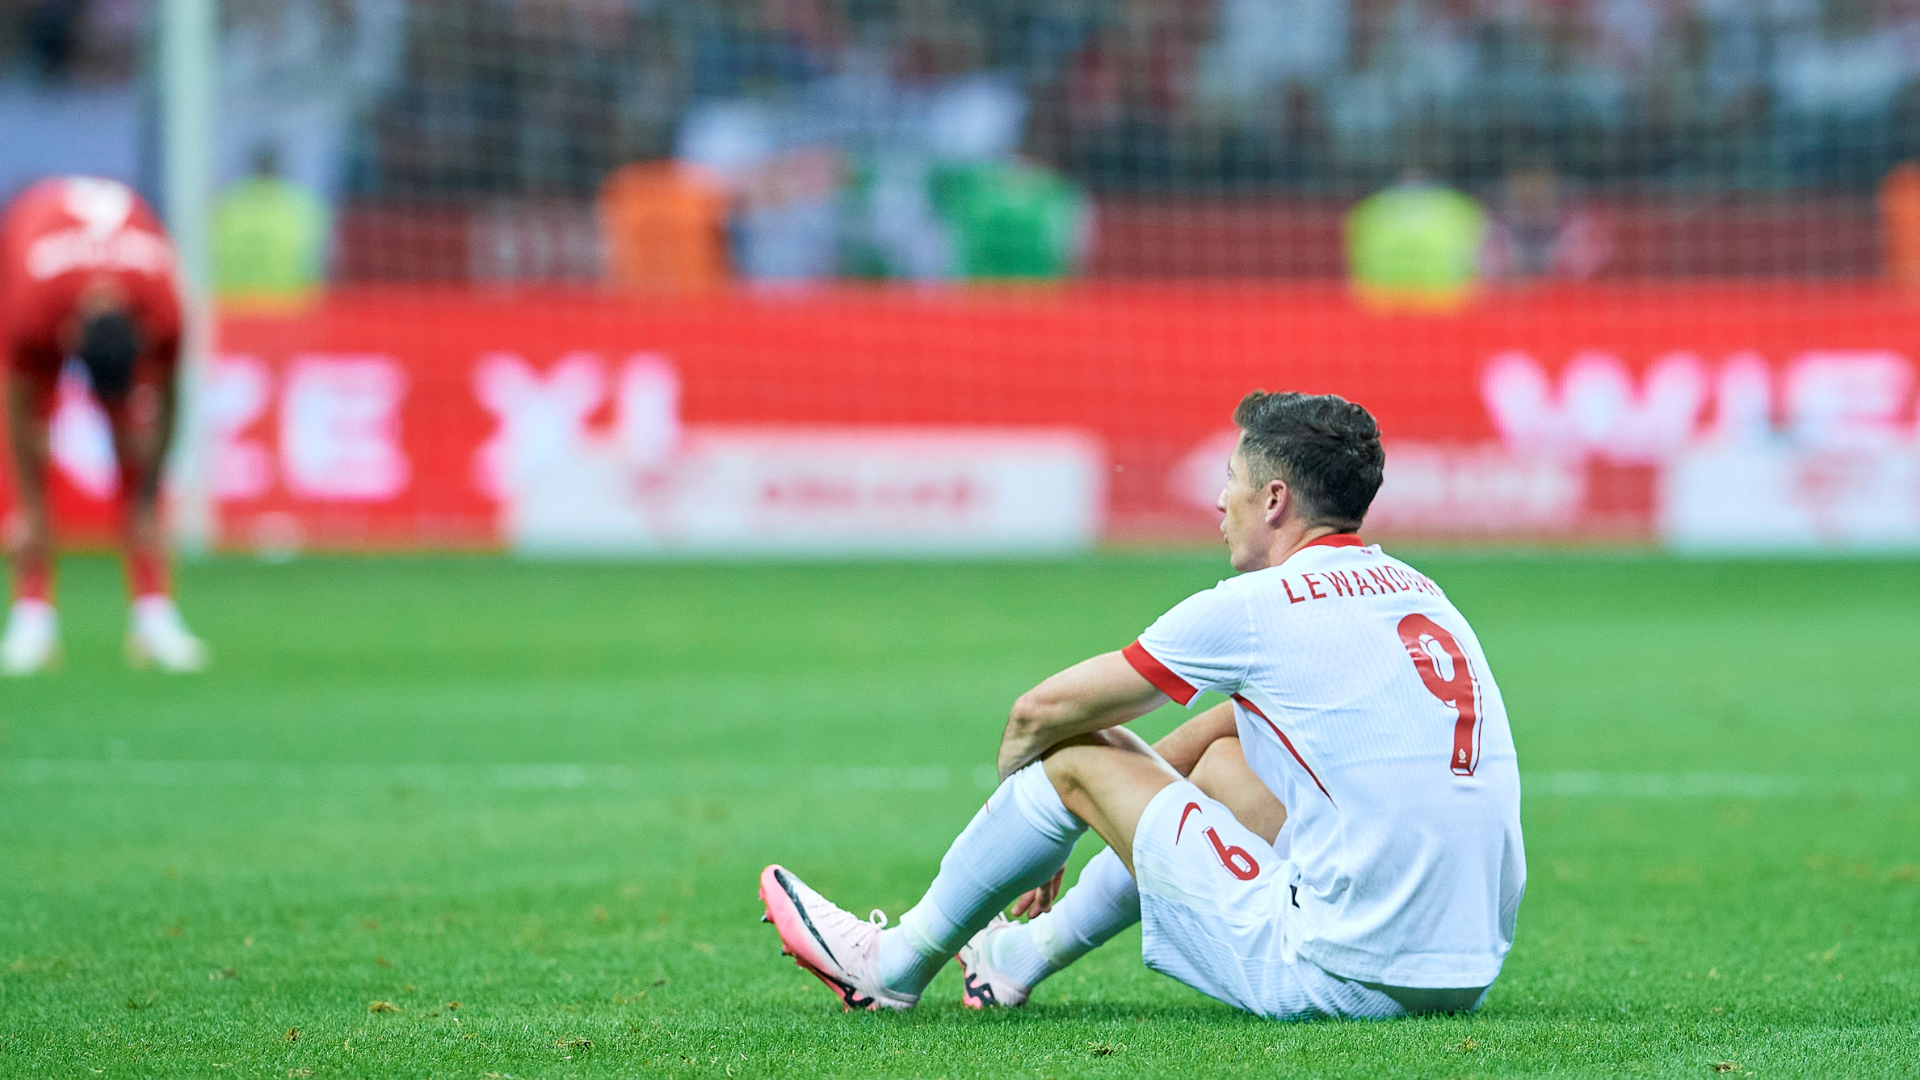 Lewandowski injury update shared